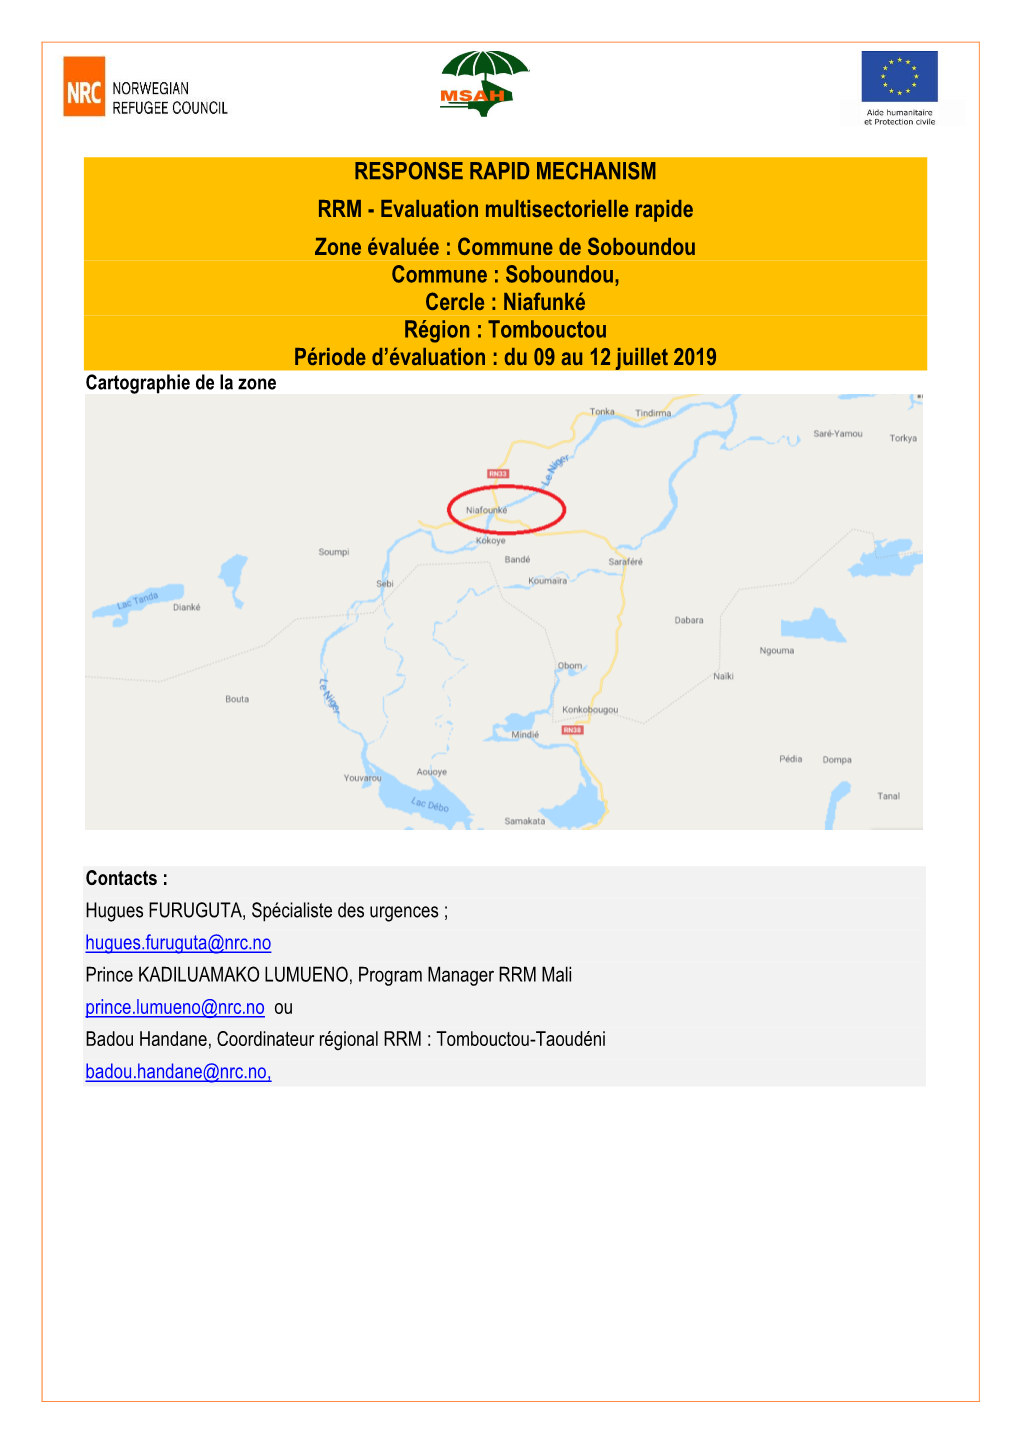 Soboundou, Cercle : Niafunké Région : Tombouctou Période D’Évaluation : Du 09 Au 12 Juillet 2019 Cartographie De La Zone